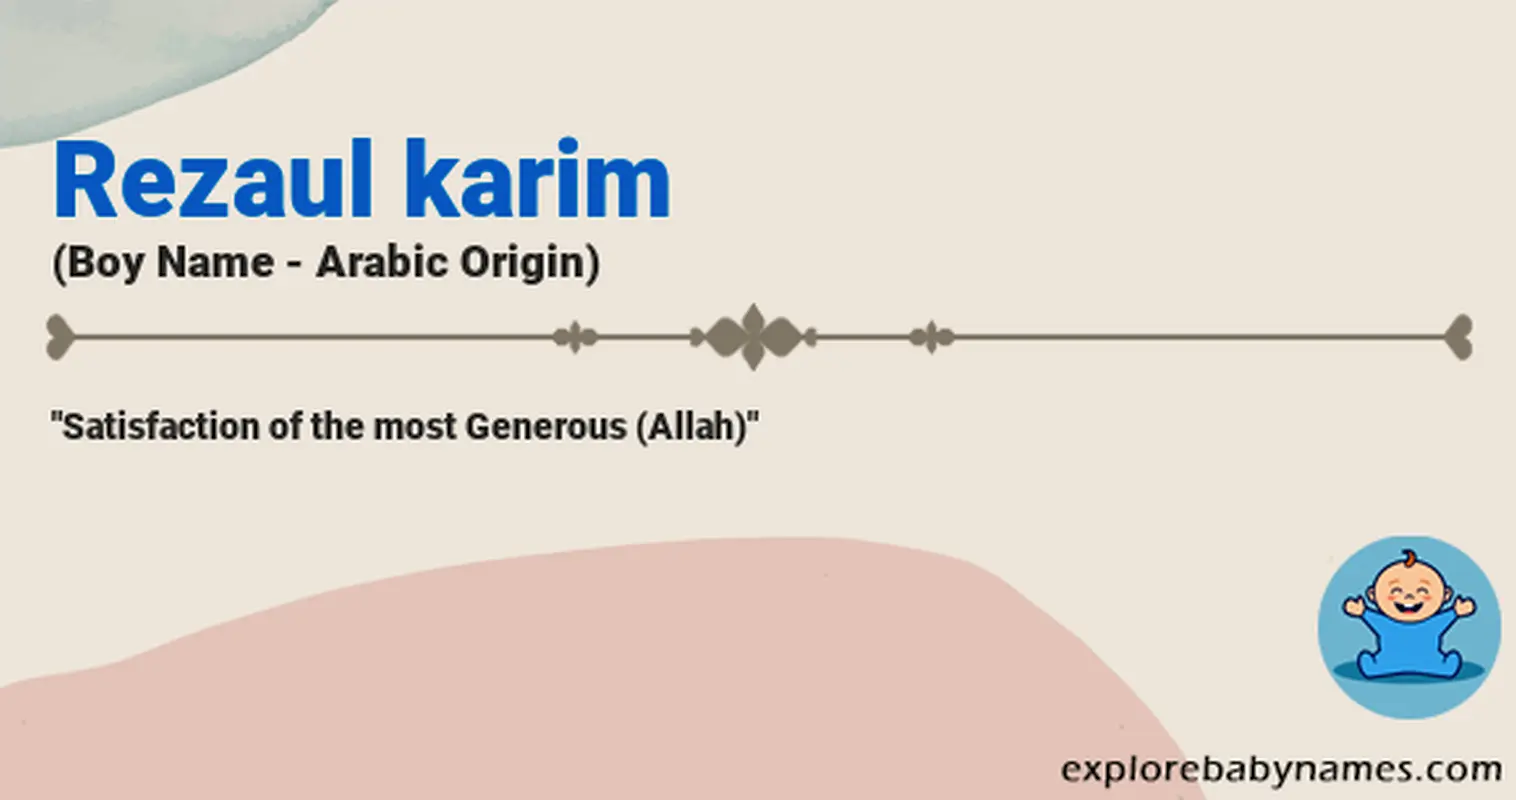 Meaning of Rezaul karim